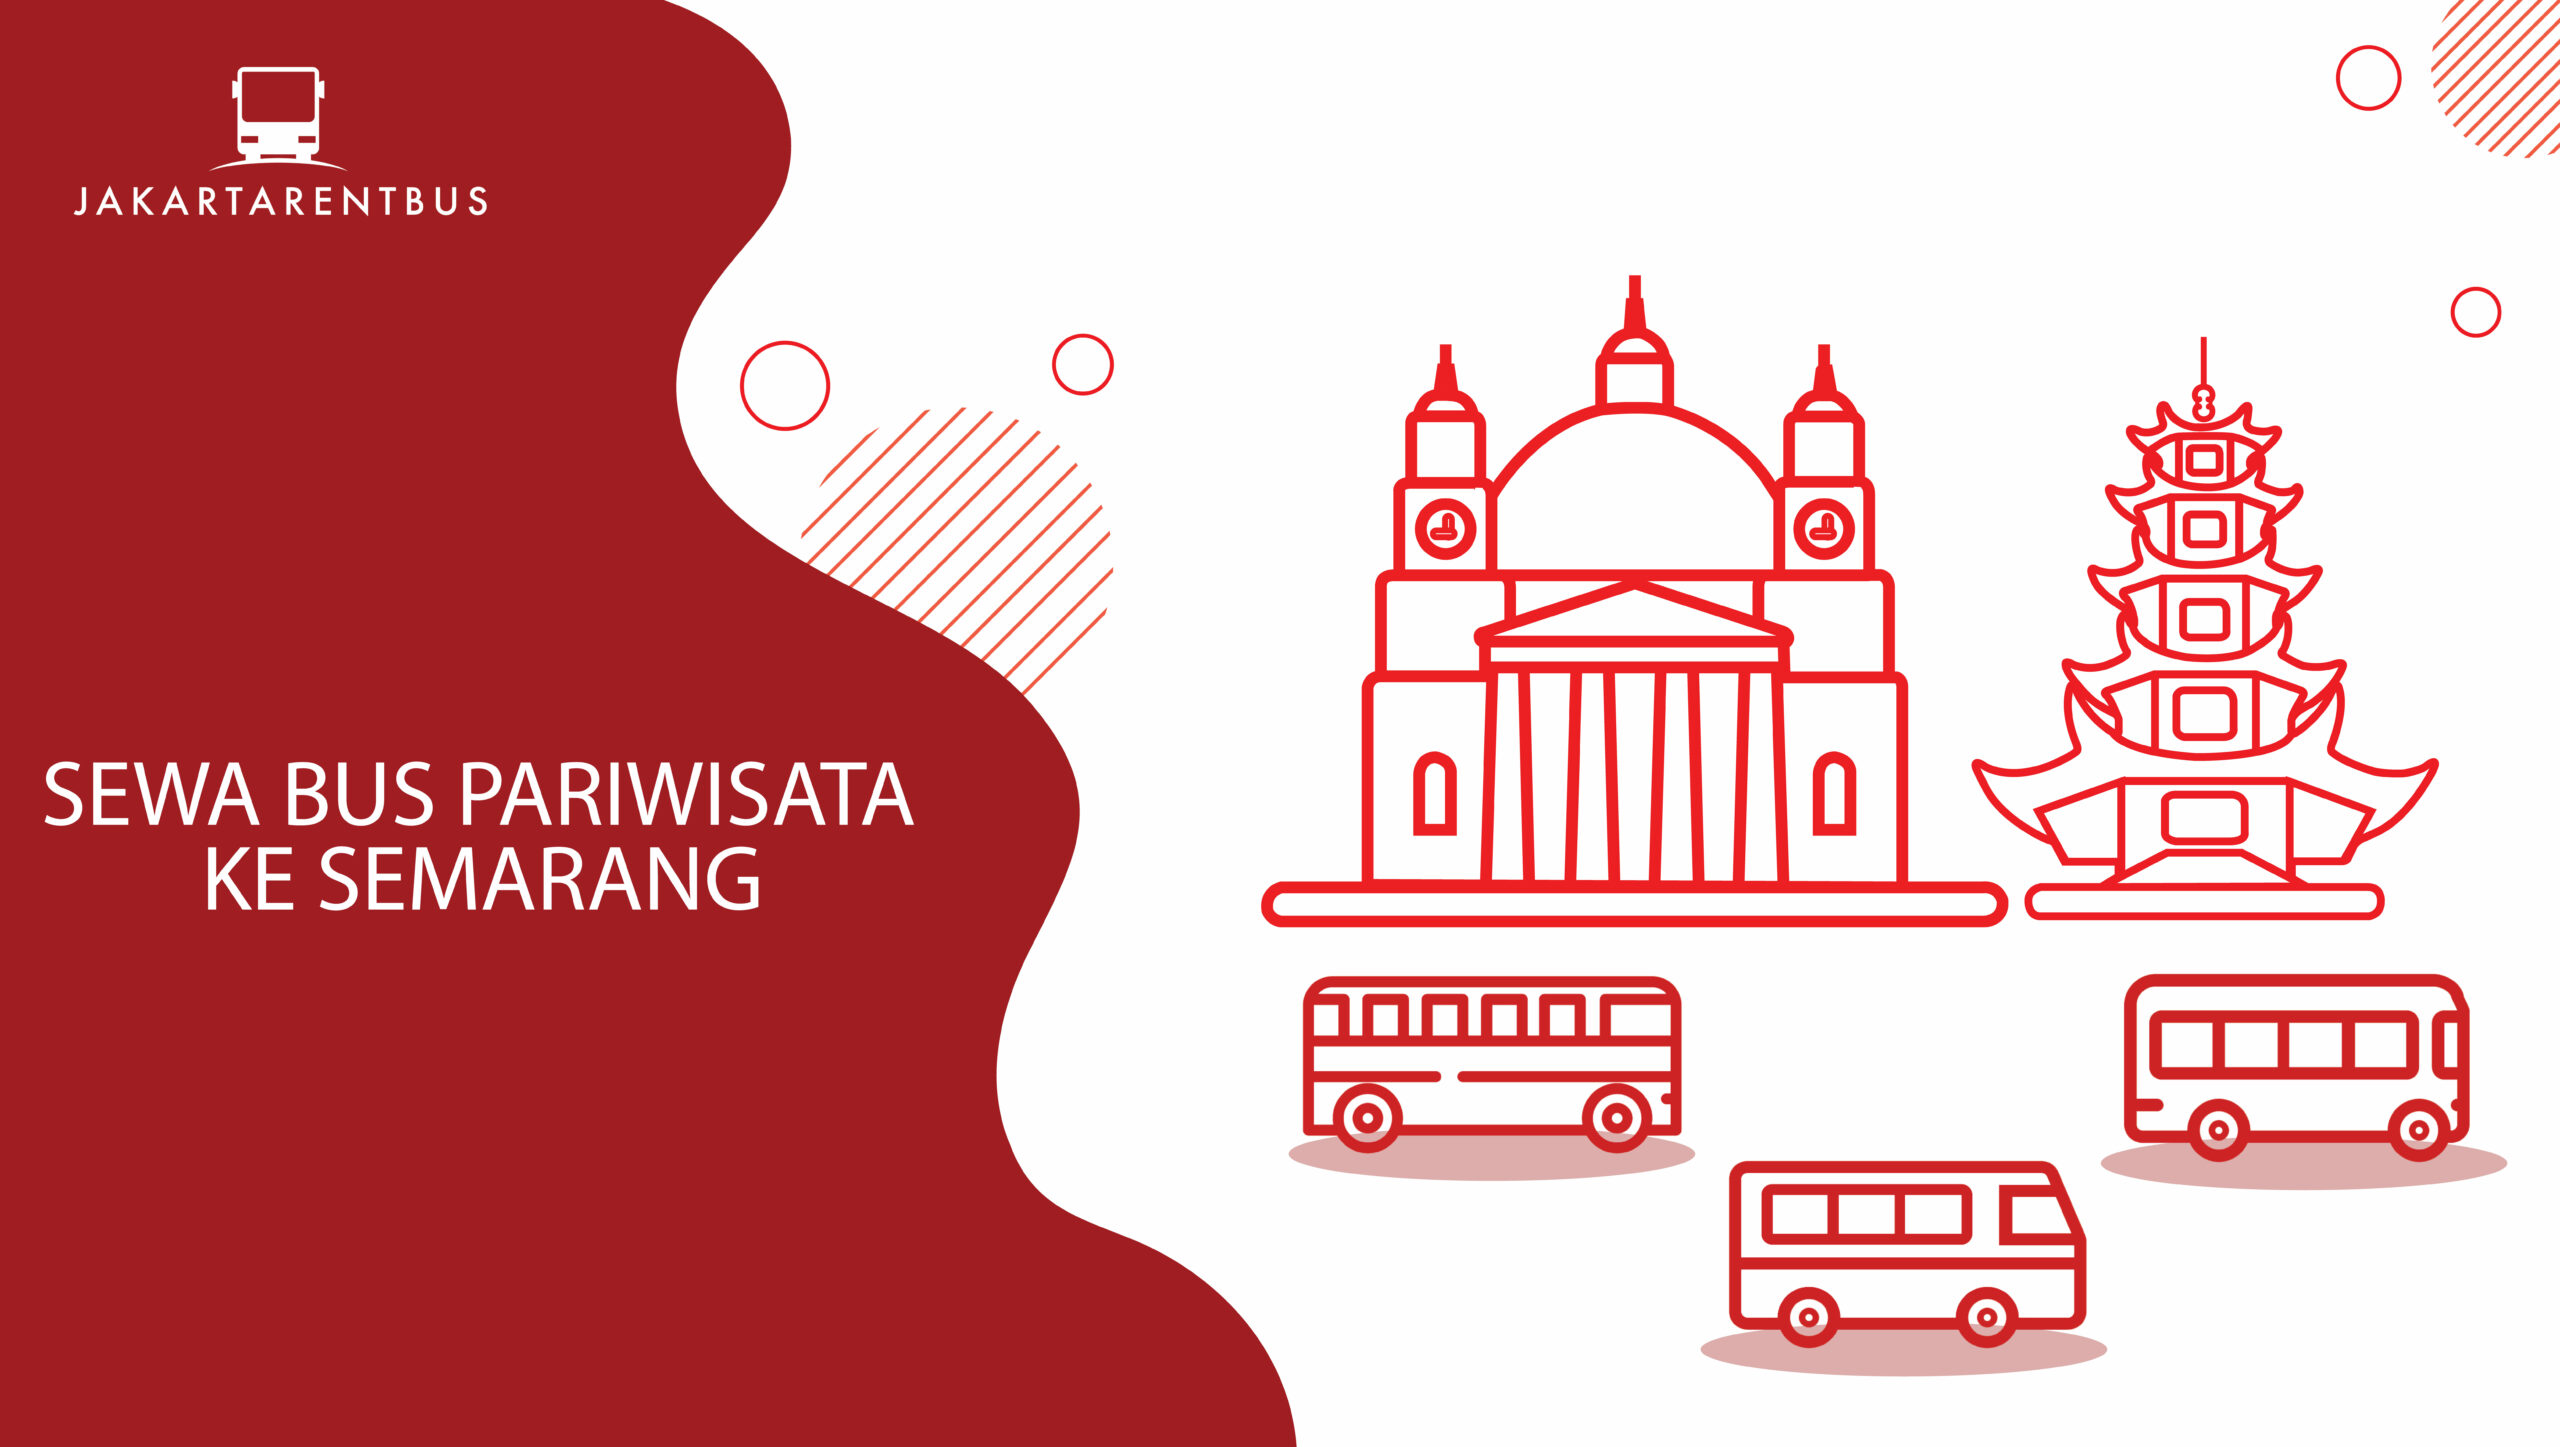 Rekomendasi Wisata Ke Semarang - Jakartarentbus